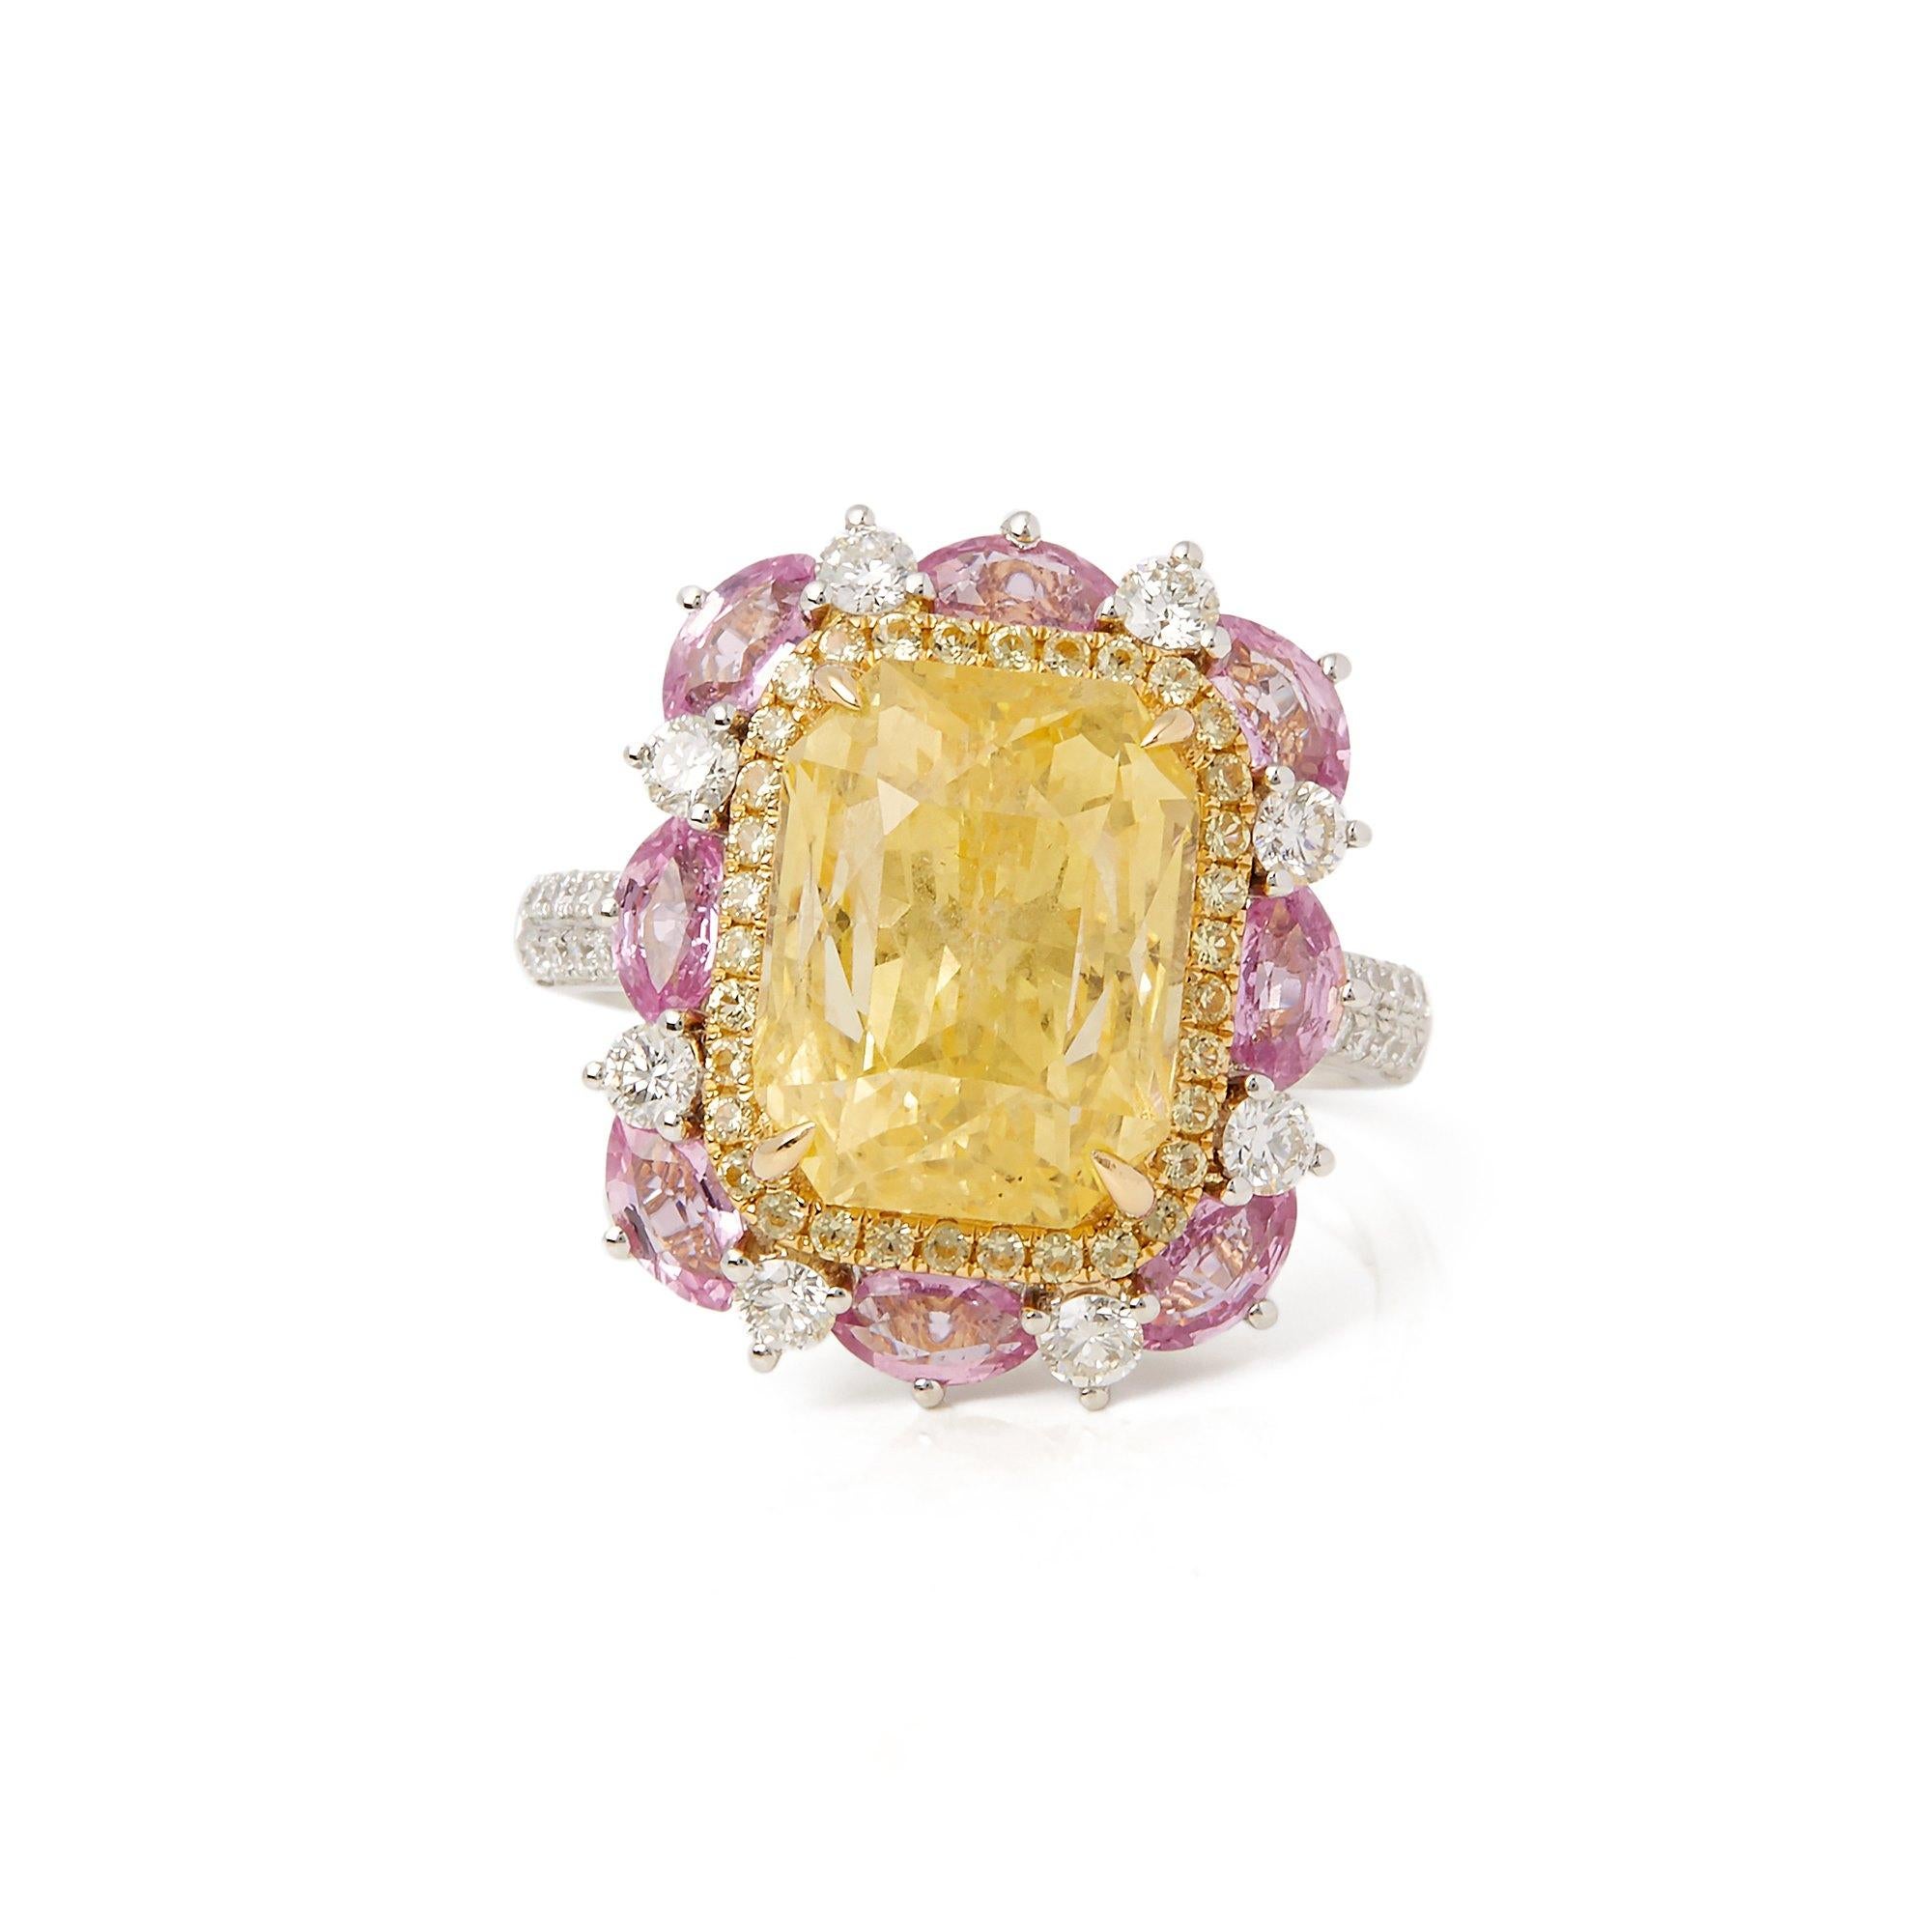 Dieser von David Jerome entworfene Ring stammt aus seiner Privatsammlung und besteht aus einem gelben Saphir im Kissenschliff mit einem Gesamtgewicht von 10,38 Karat, besetzt mit runden Diamanten im Brillantschliff und rosa Saphiren mit einem